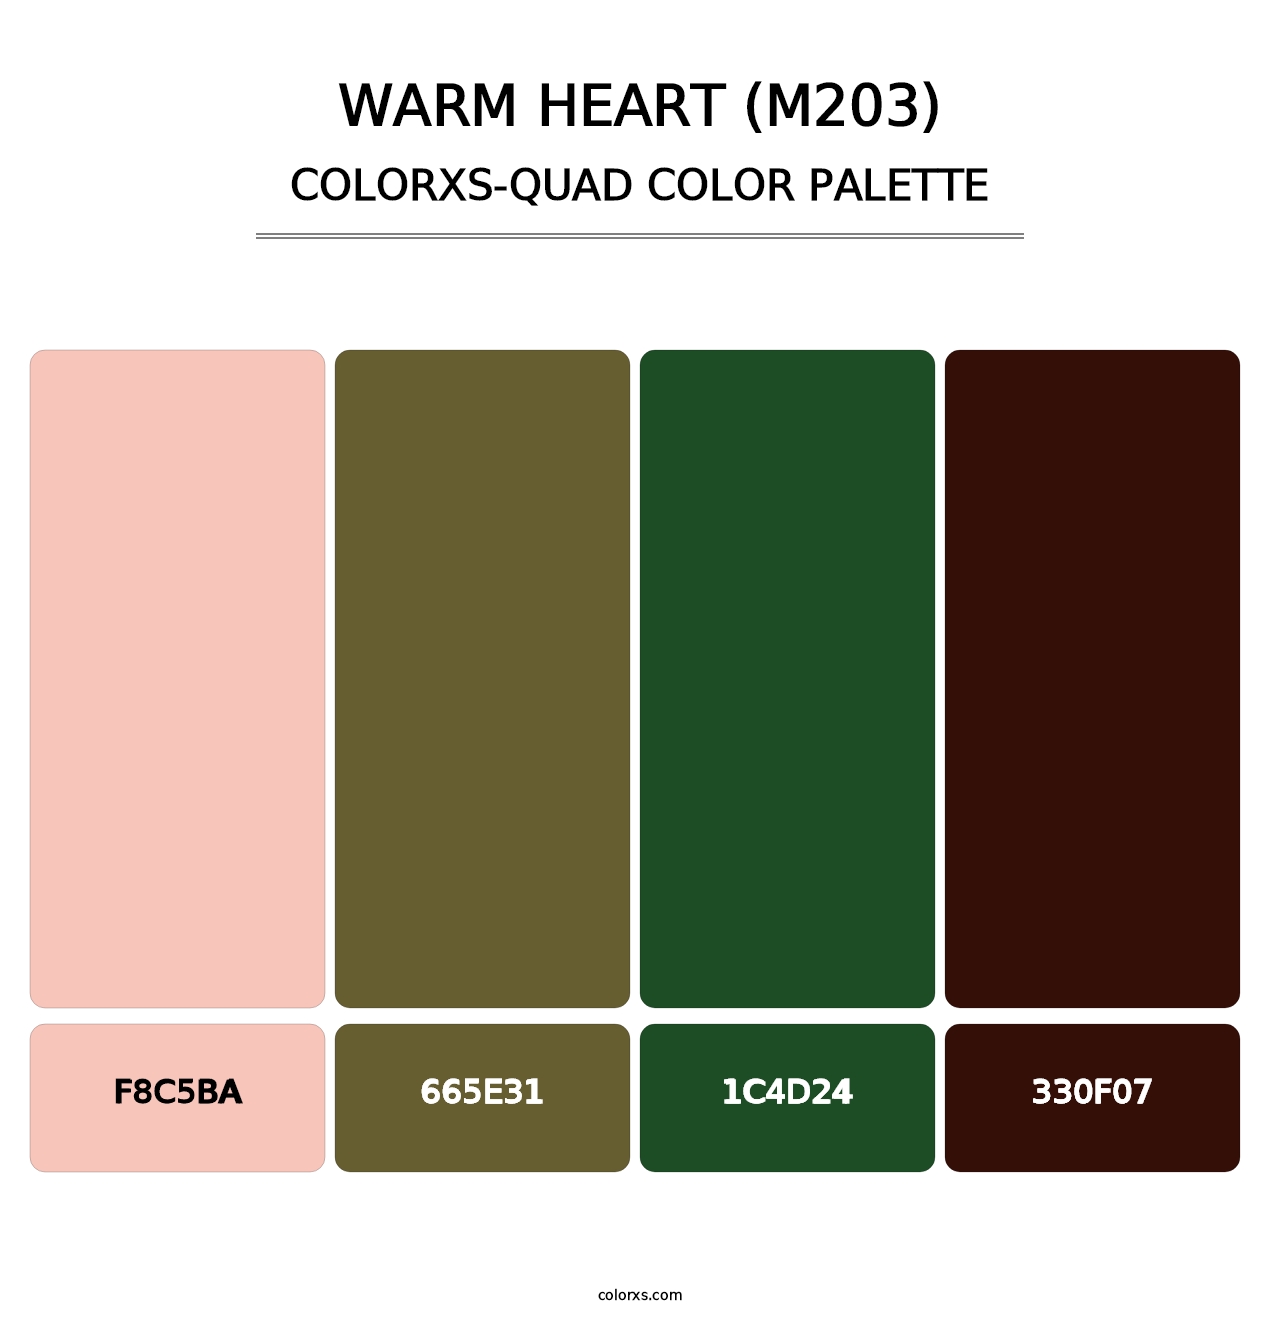 Warm Heart (M203) - Colorxs Quad Palette